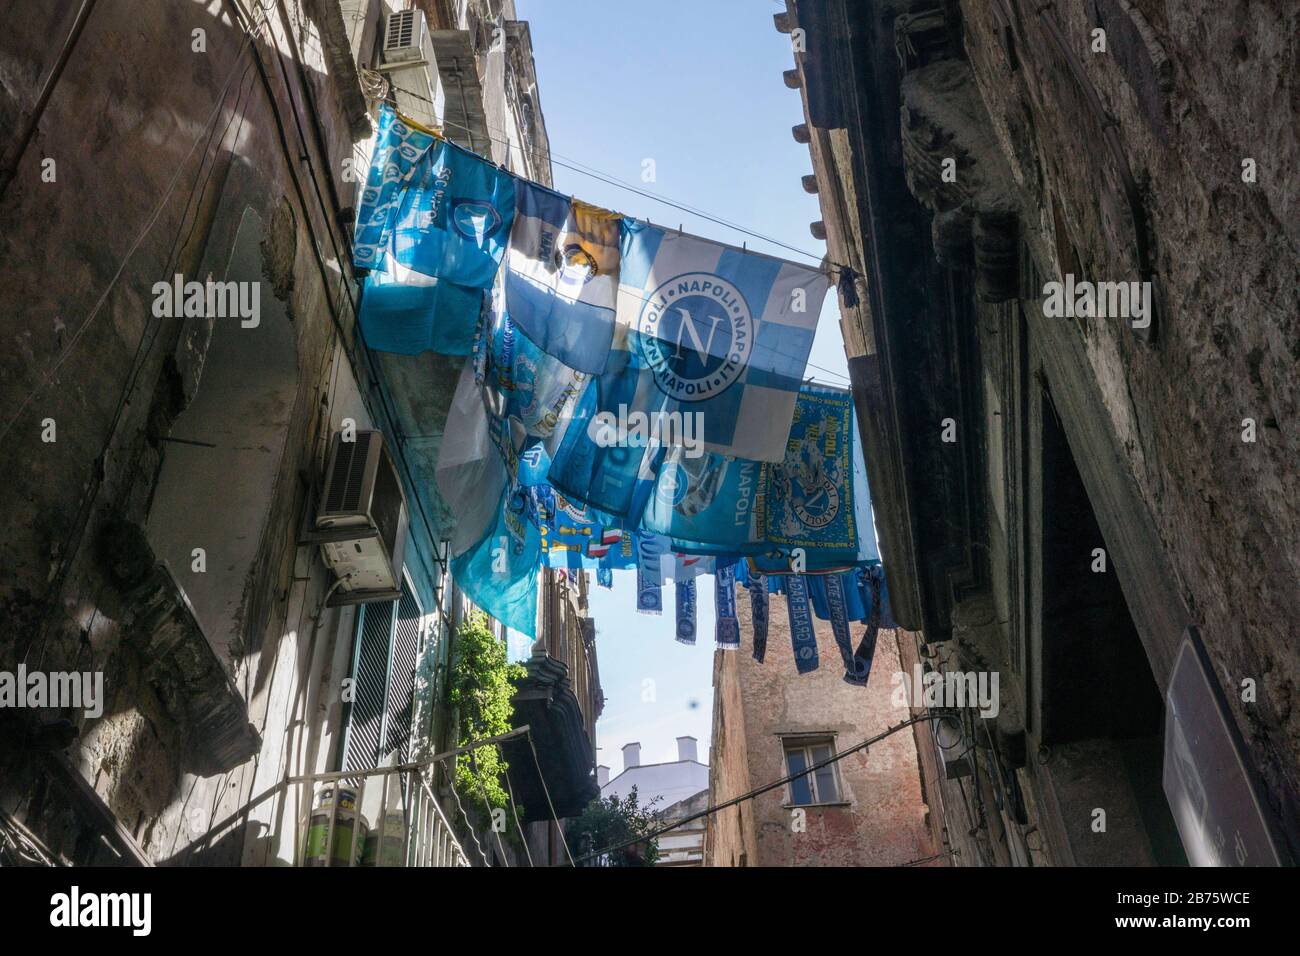 Bandiere, maglie, sciarpe con il logo della squadra calcistica della SSC di Napoli saranno appese ad asciugare su una linea di abbigliamento nel centro storico di Napoli il 4 maggio 2017. [traduzione automatica] Foto Stock